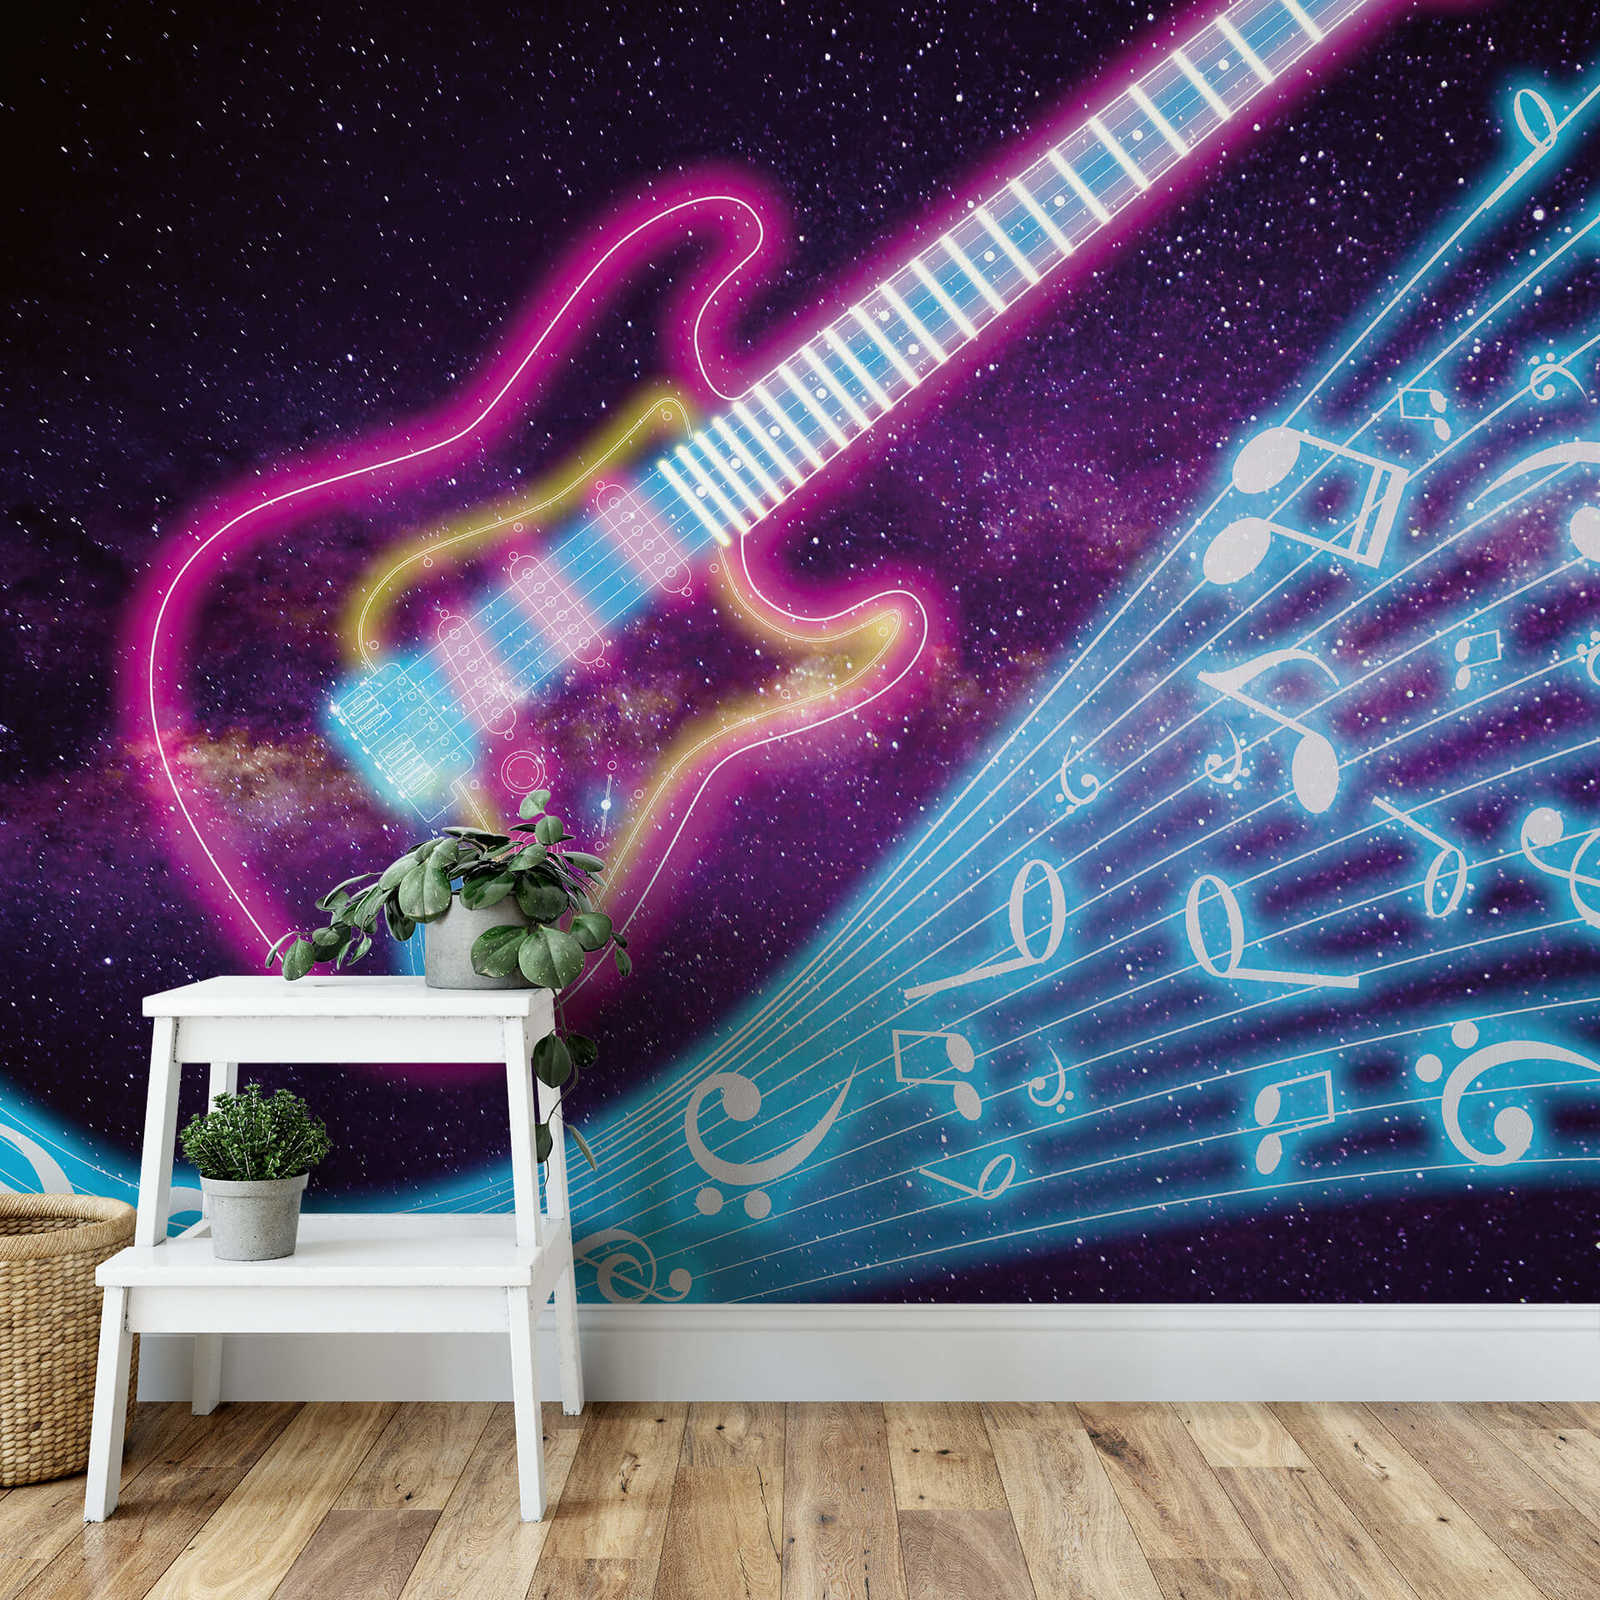             Papel pintado musical con diseño de galaxia y neón - Púrpura, Turquesa
        